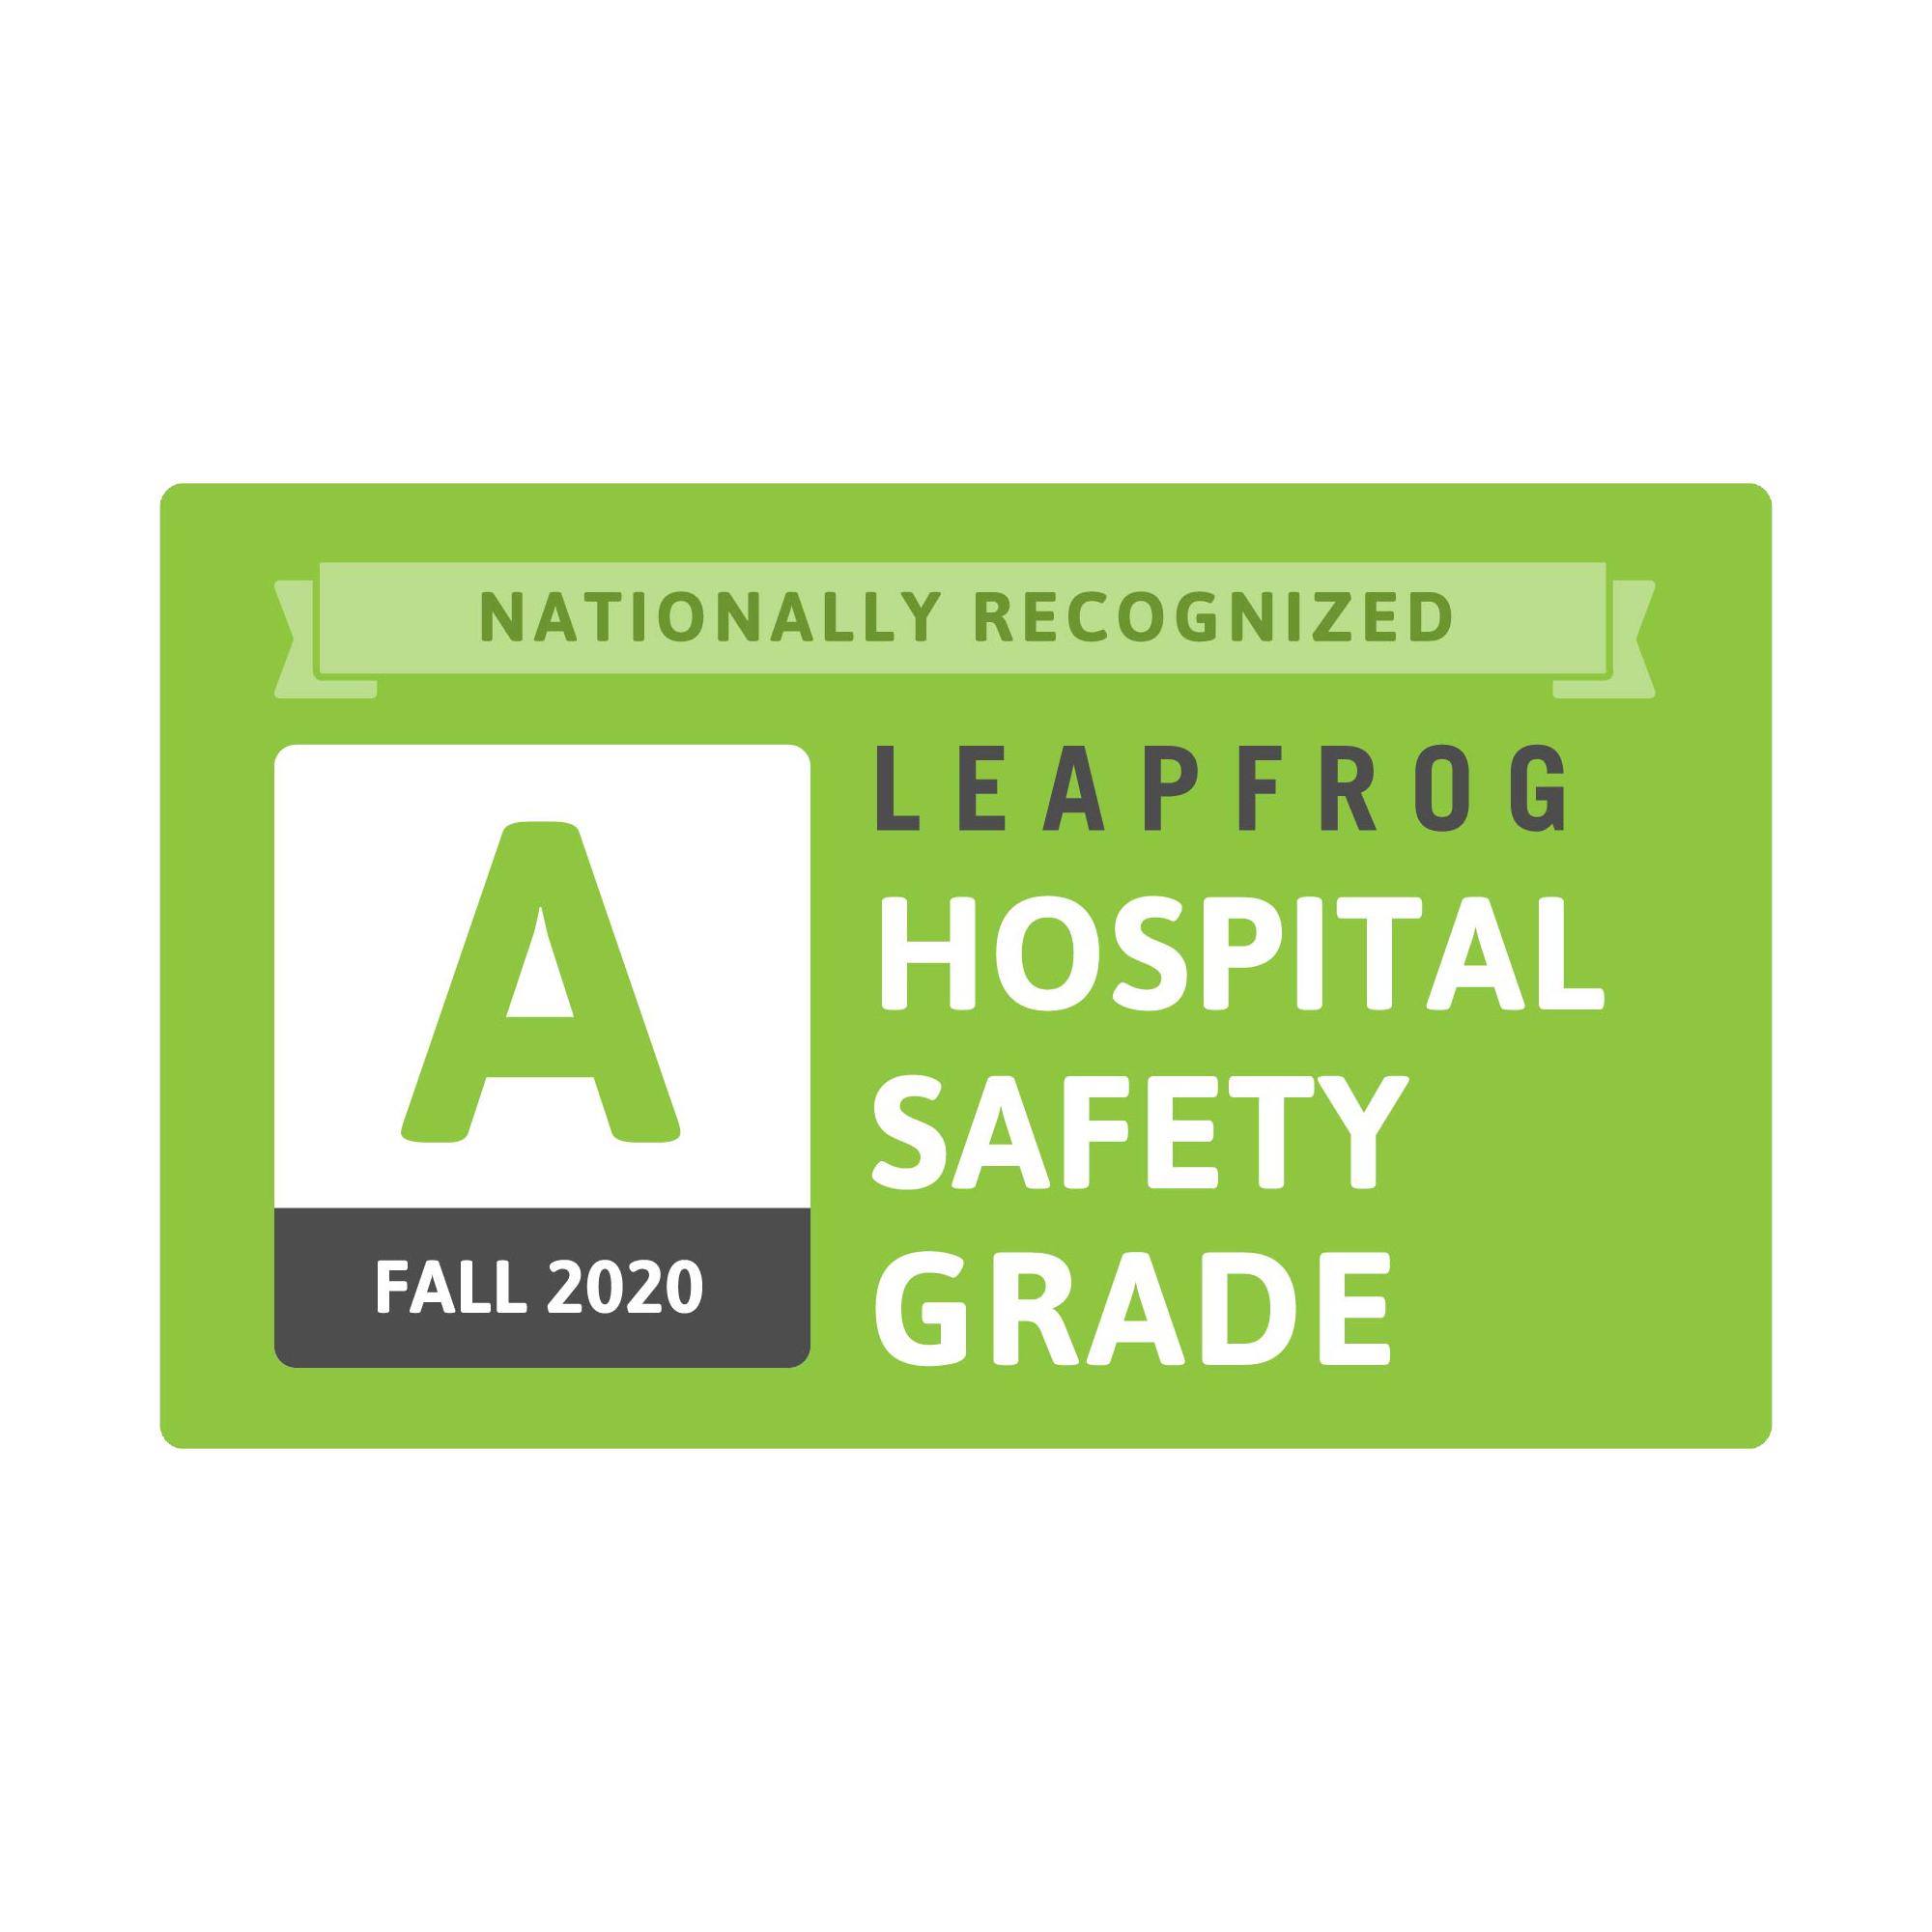 Leapfrog Hospital grade "A" for Fall 2020.